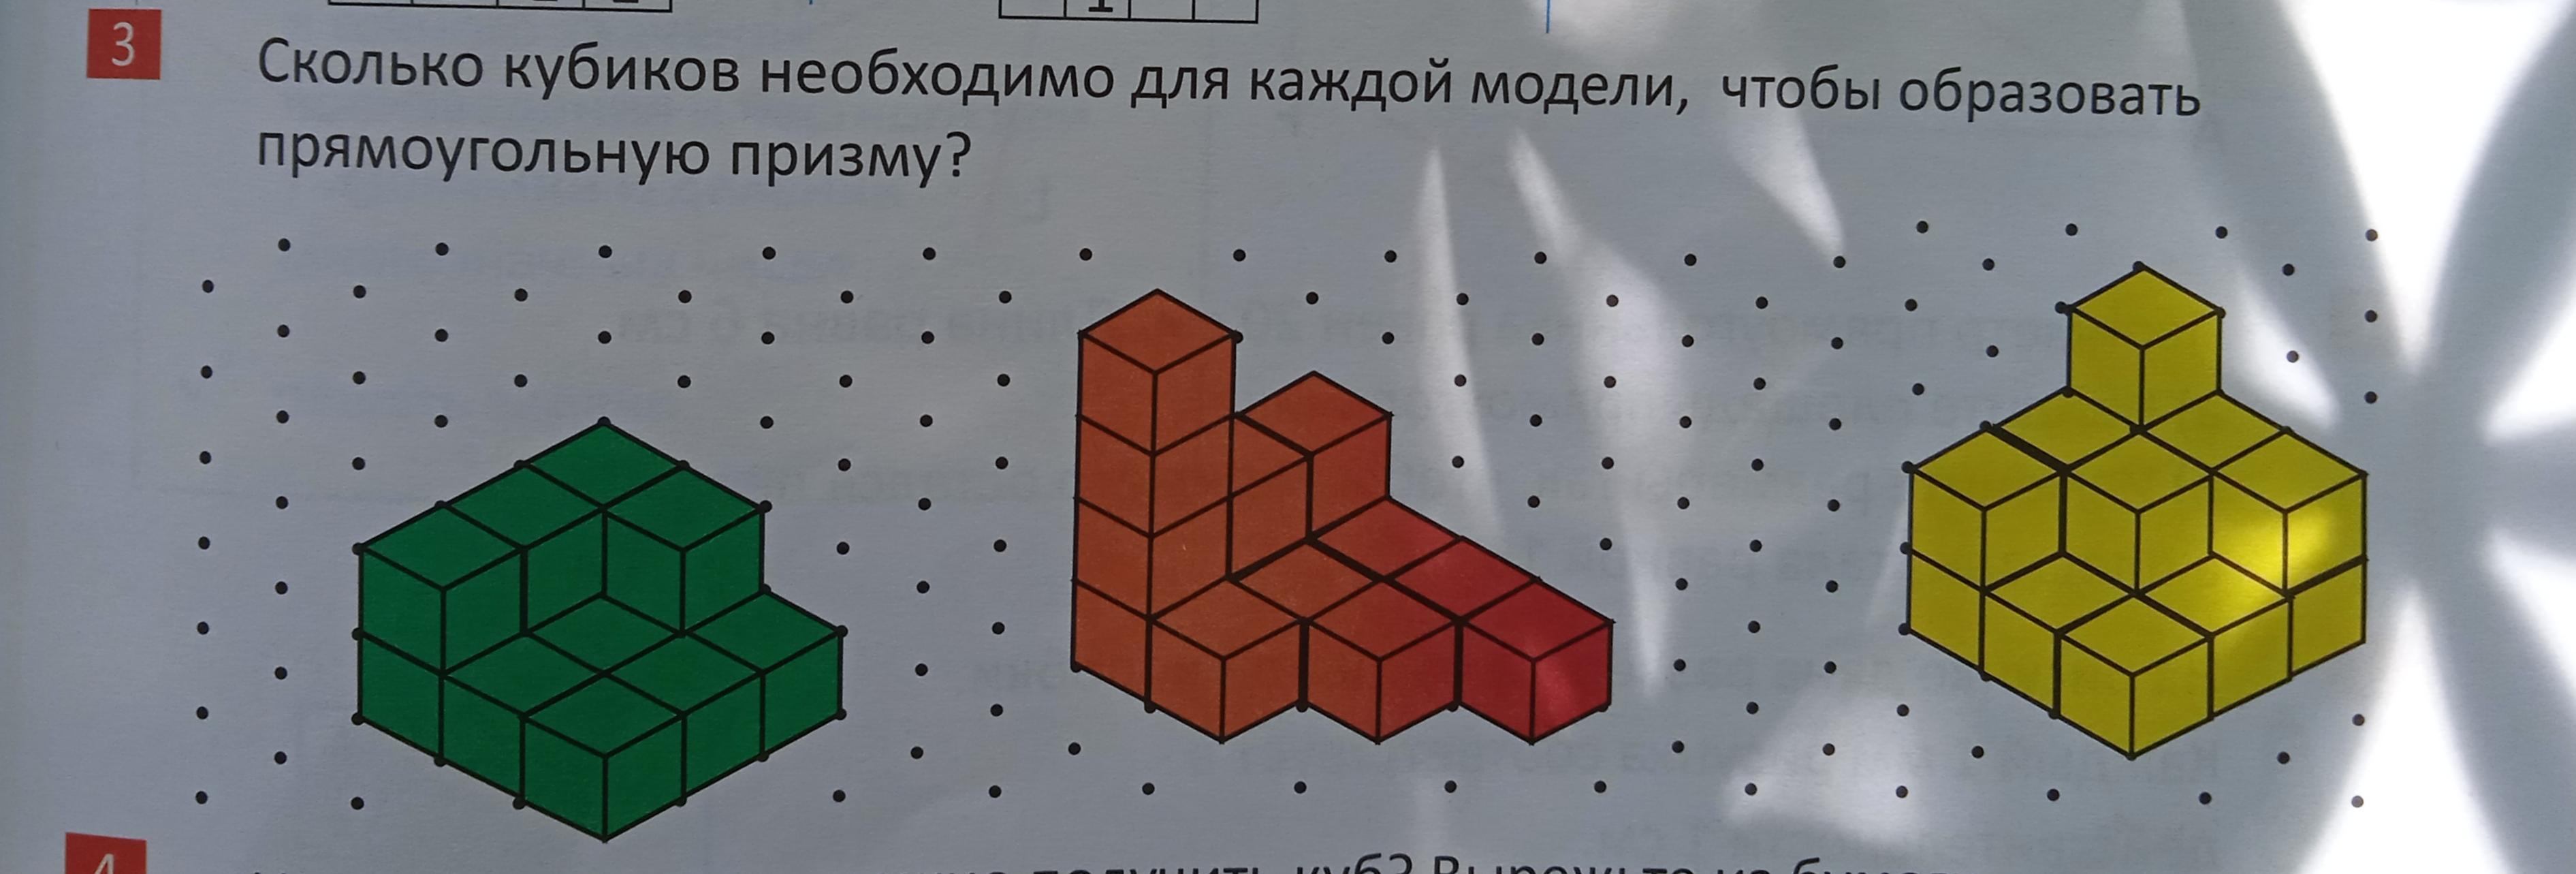 5 кубиков это сколько